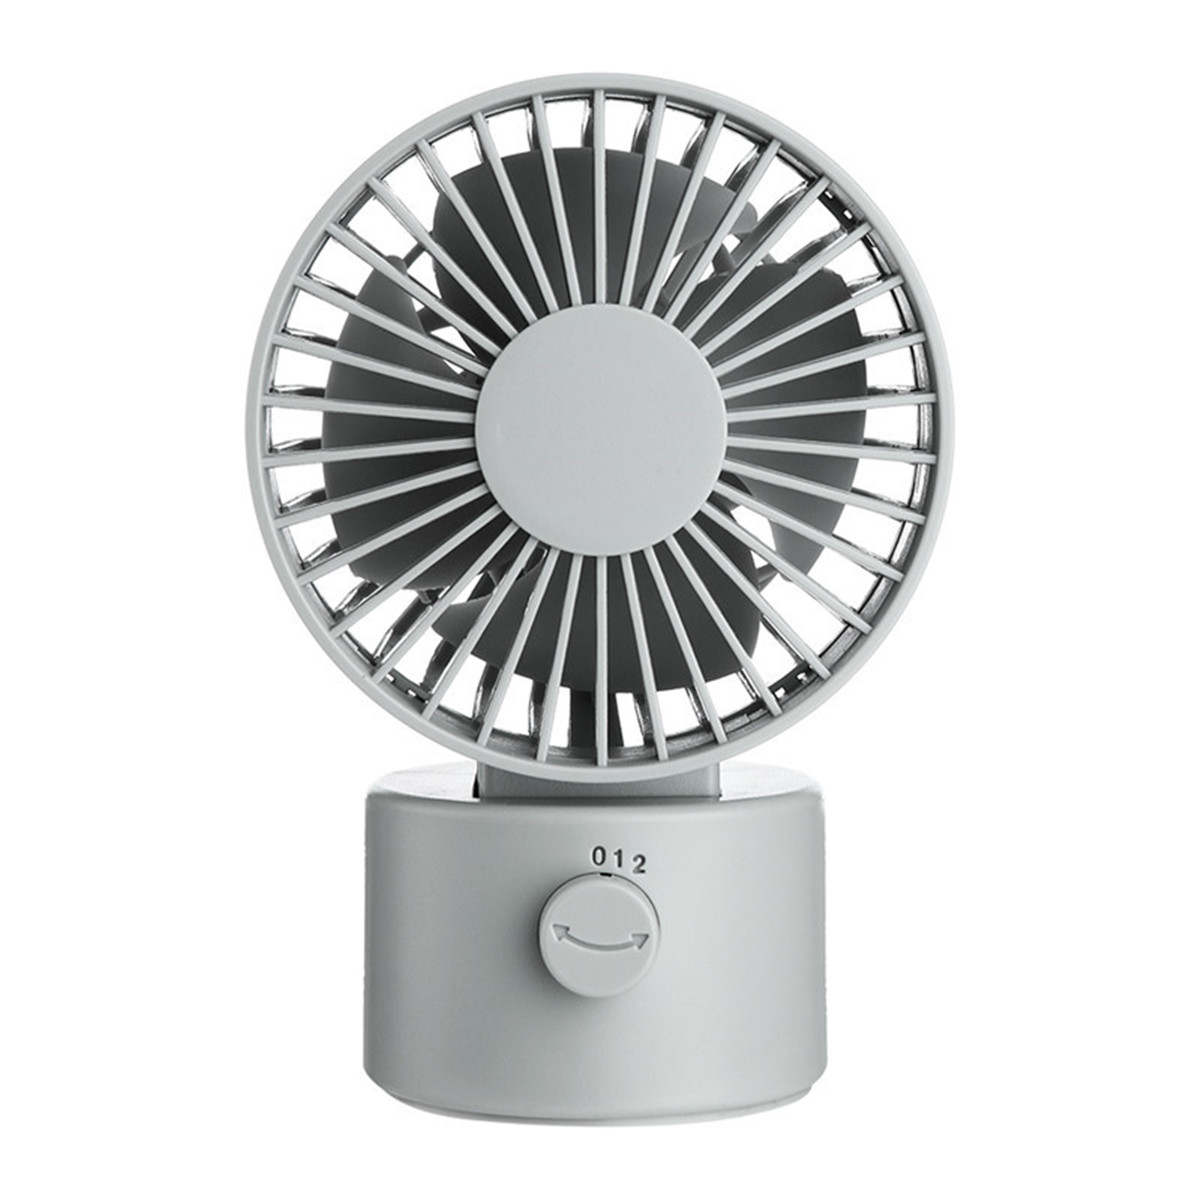 

1.2W Mini USB Rechargeable Desktop Silent Fan 2 Modes Wind Speed Oscillating Cooling Fan